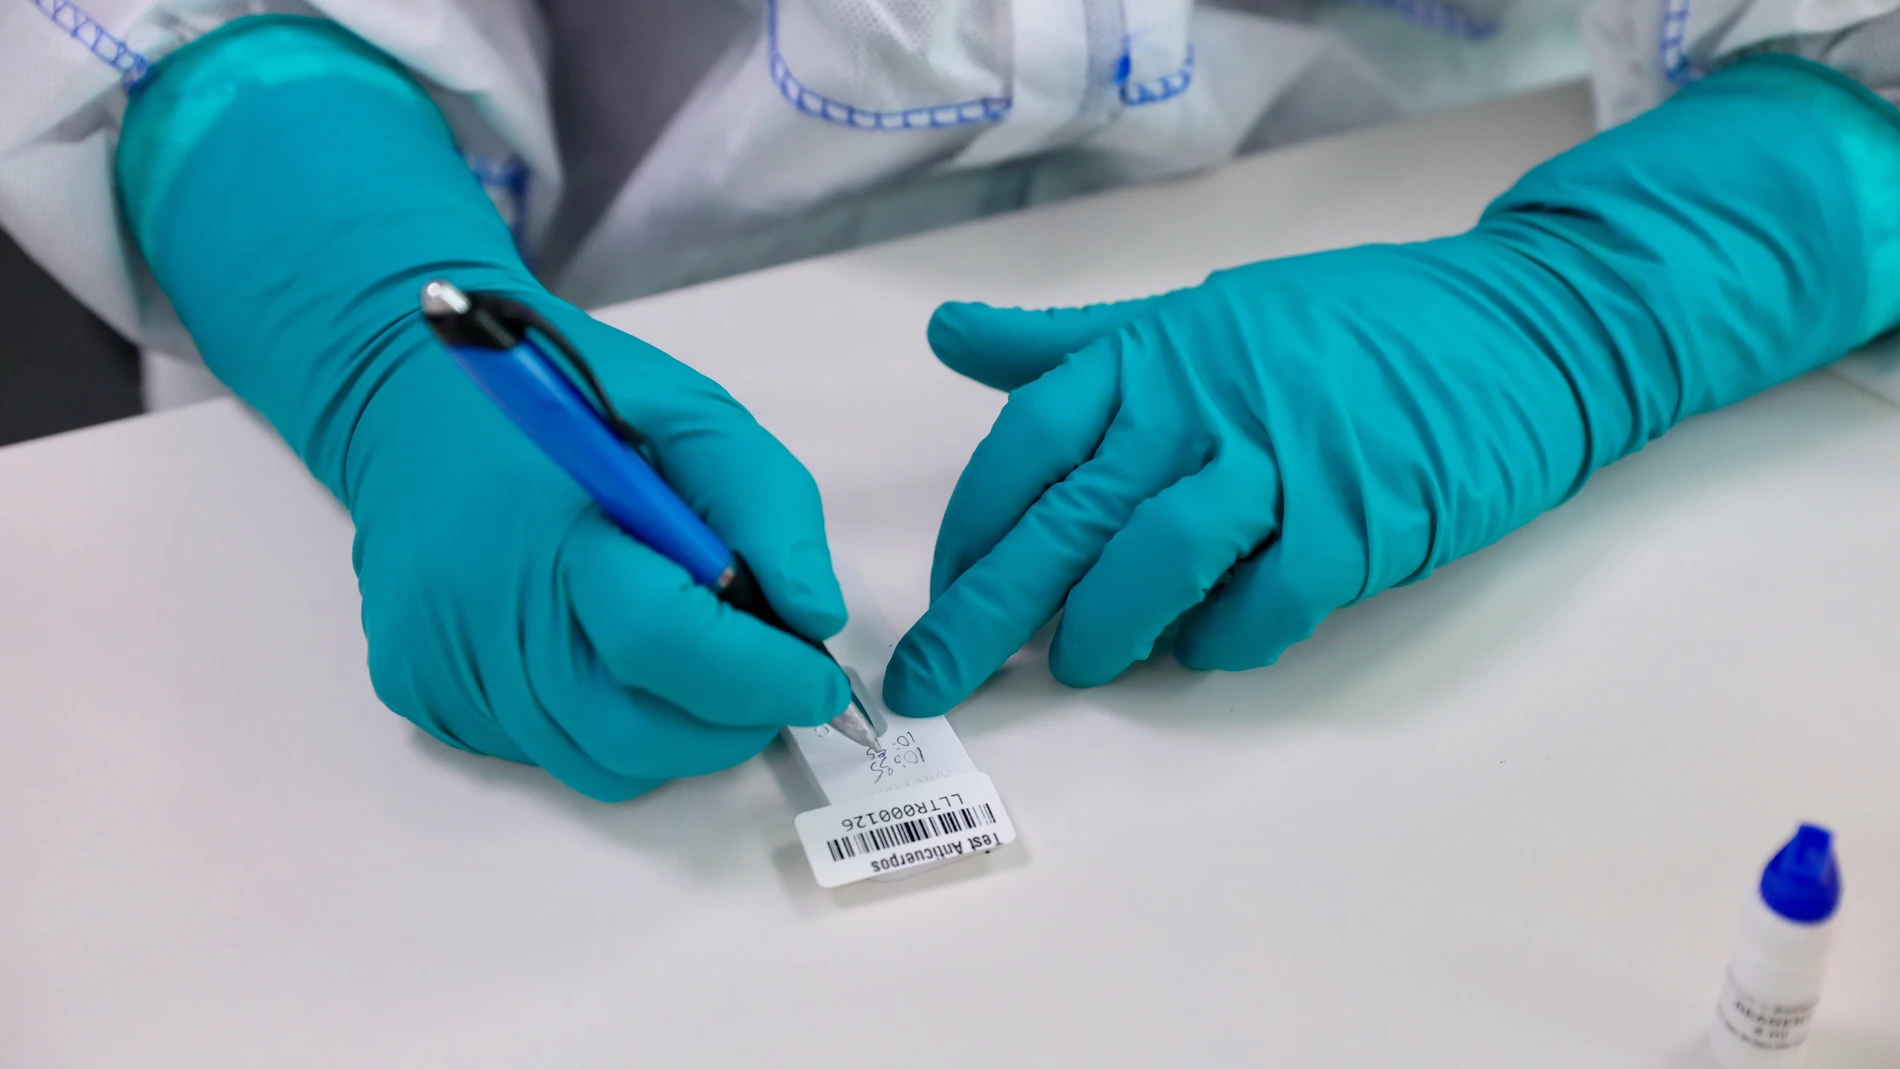 Laboratorio Life Length, volcado en las diferentes pruebas de detección Covid. Test PCR